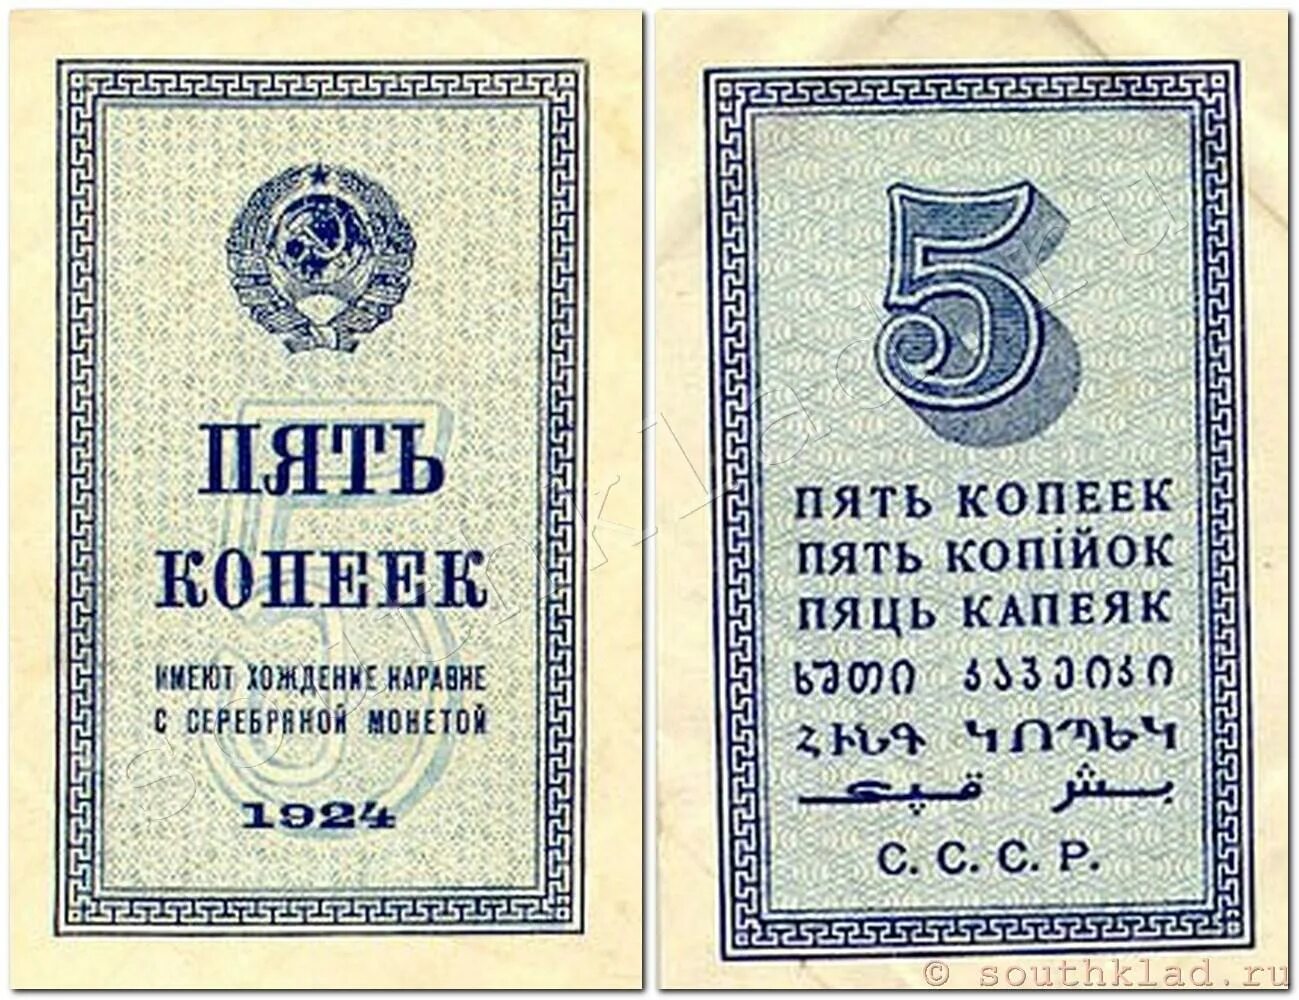 5 Копеек 1924. 5 Коп 1924 года. Деньги 1924 года. Бумажные копейки 1924 года. 3 рубля 5 копеек